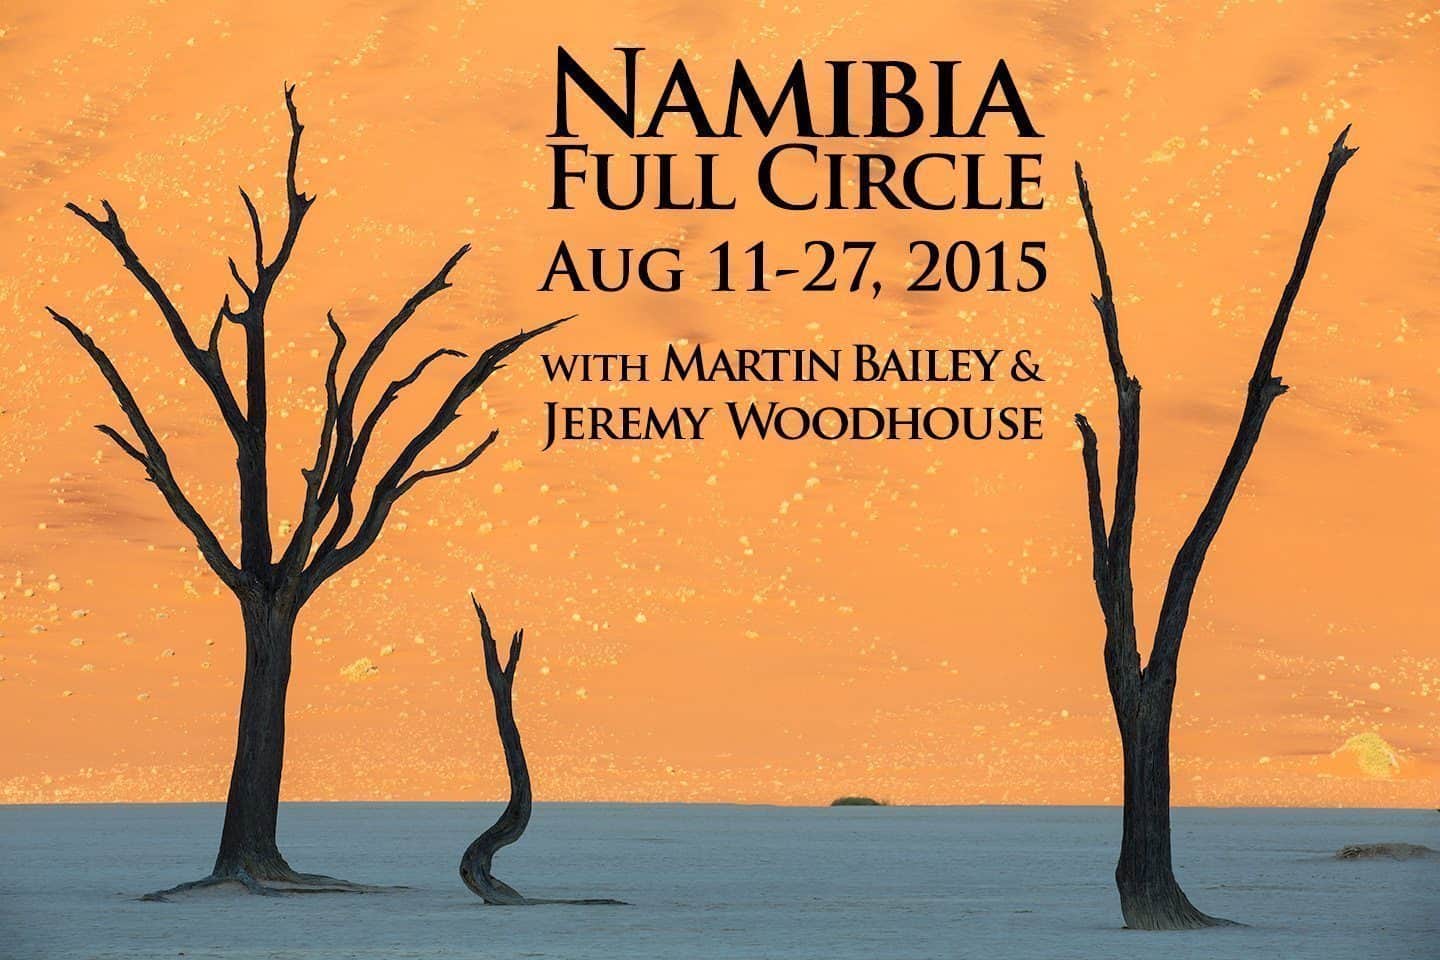 Namibia Full Circle Tour Aug 11-27, 2015